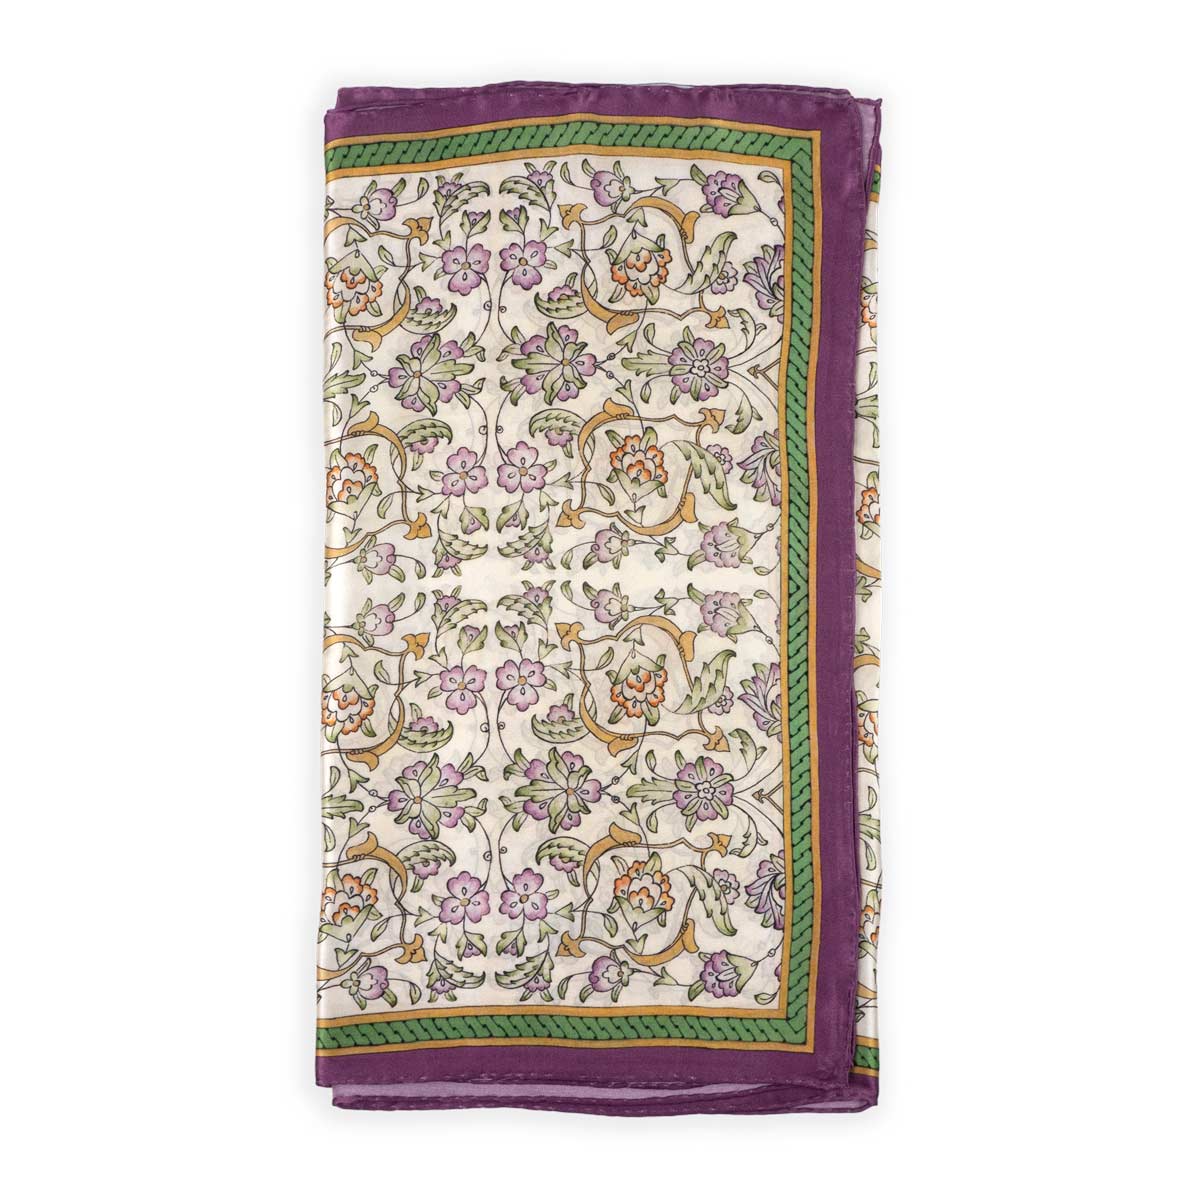 Pañuelo de seda con estampado turco morado